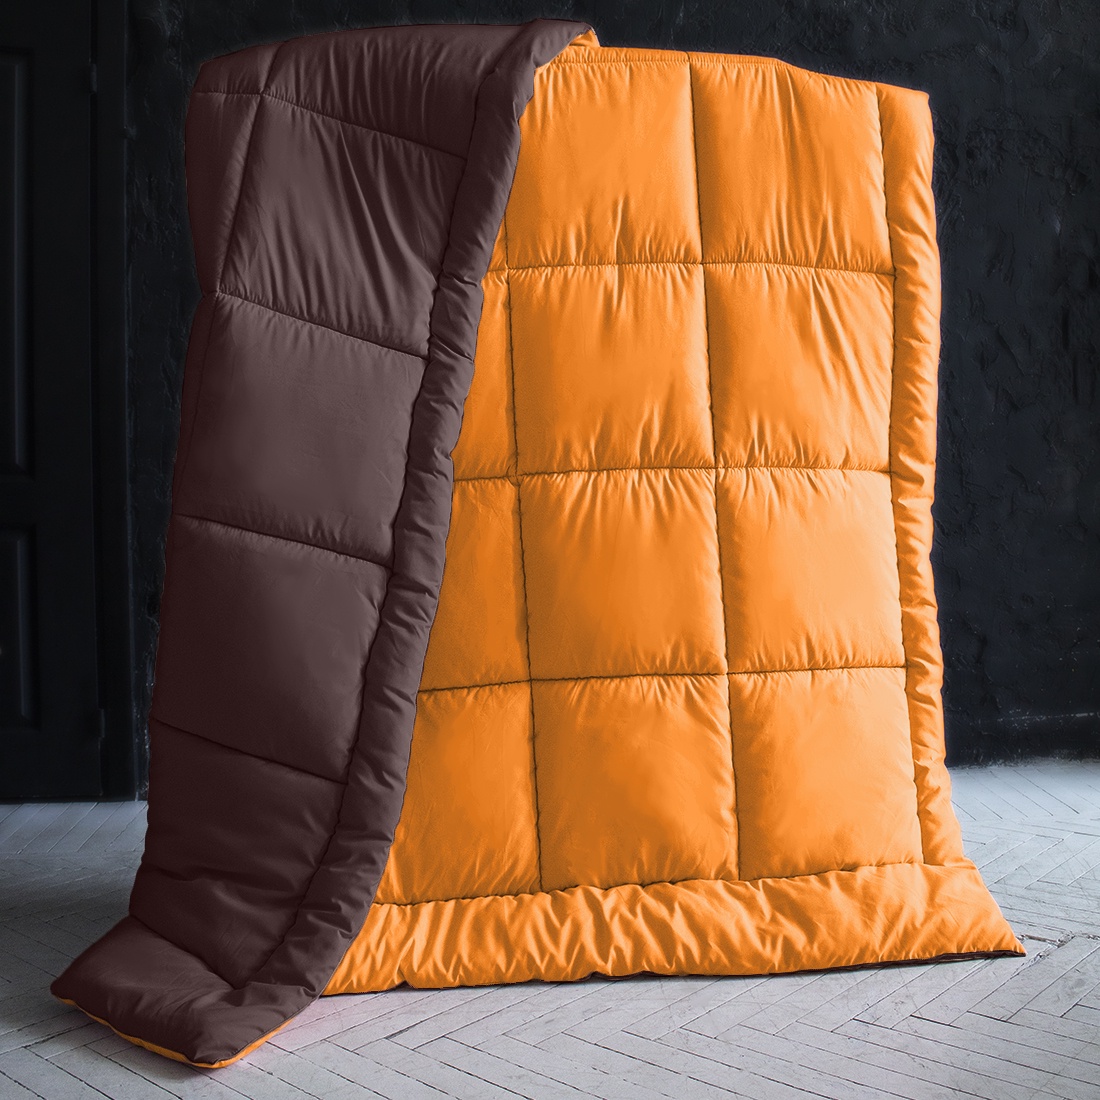 фото Одеяло "SleepiX", Мультиколор, цвет: оранжевый, темно-коричневый, 155х215 см Sleep ix